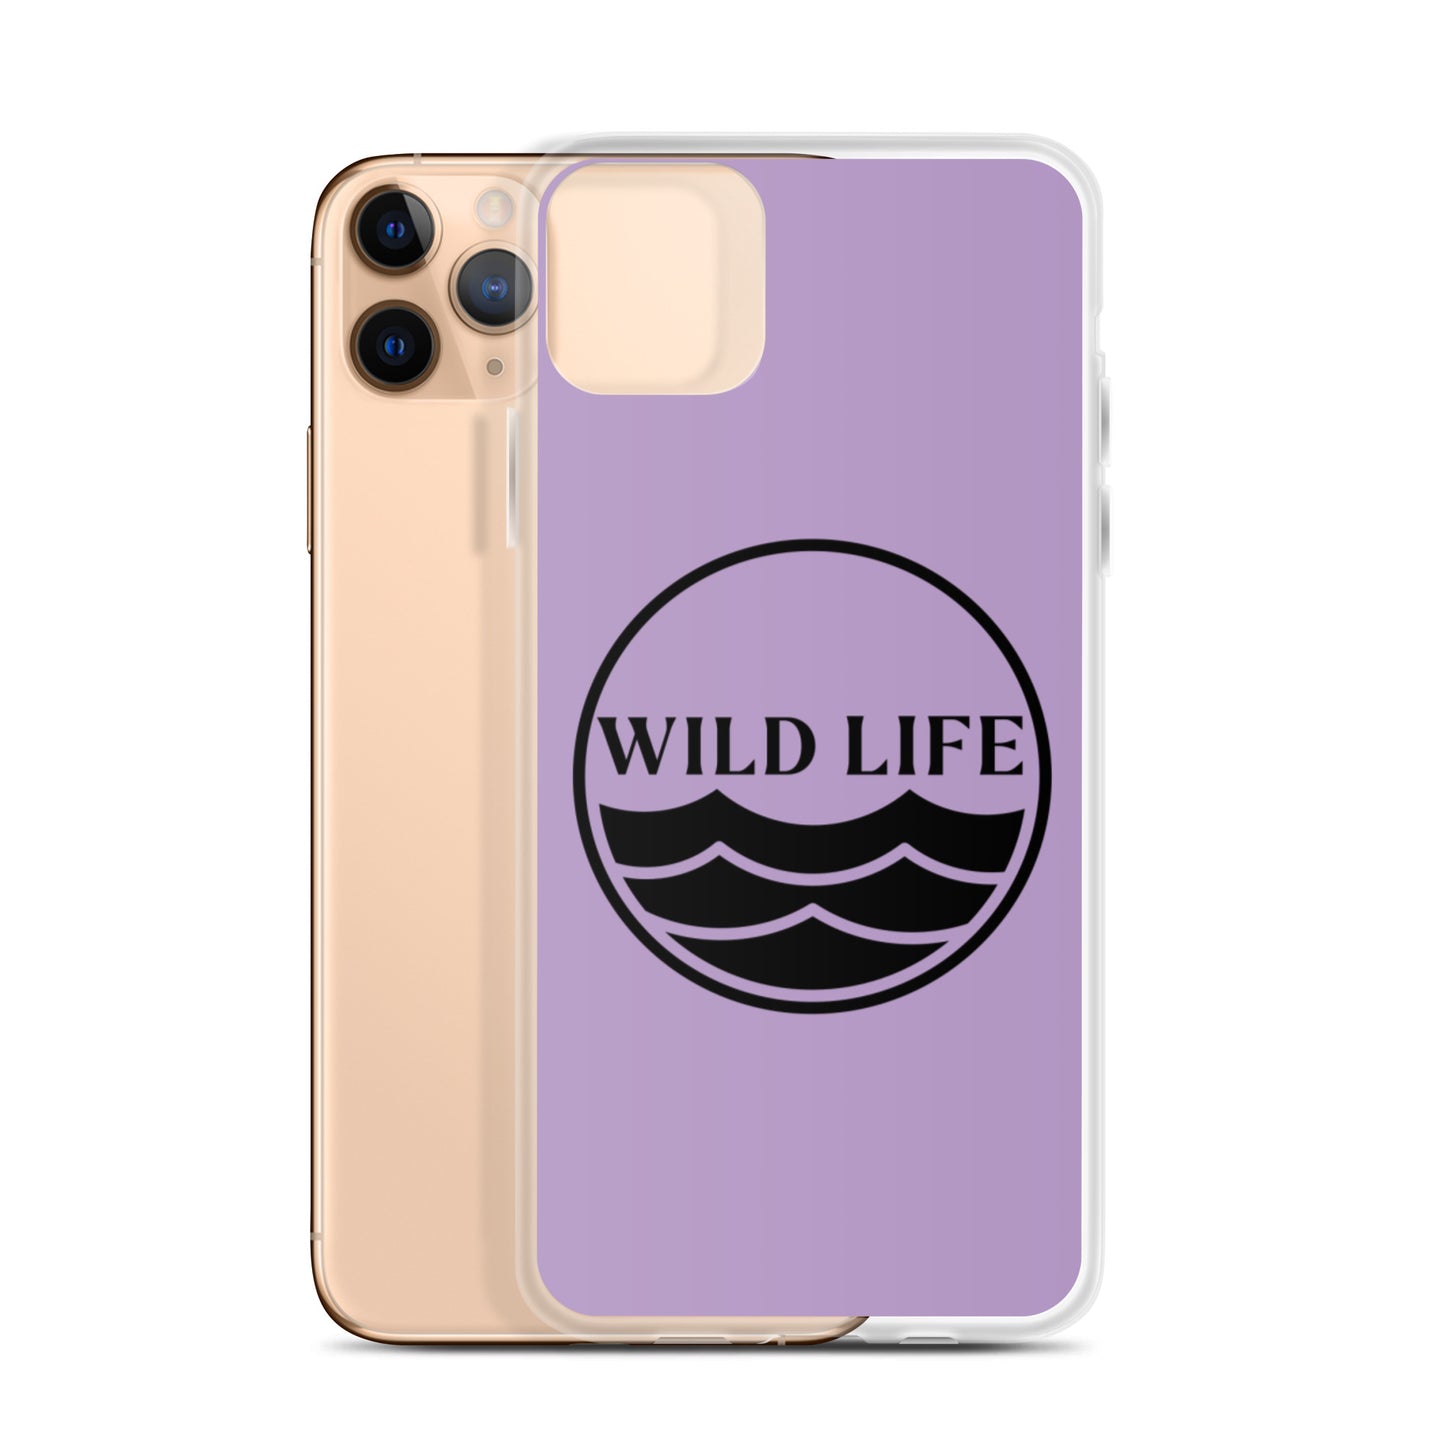 WILD LIFE iPhone Case - Lavender